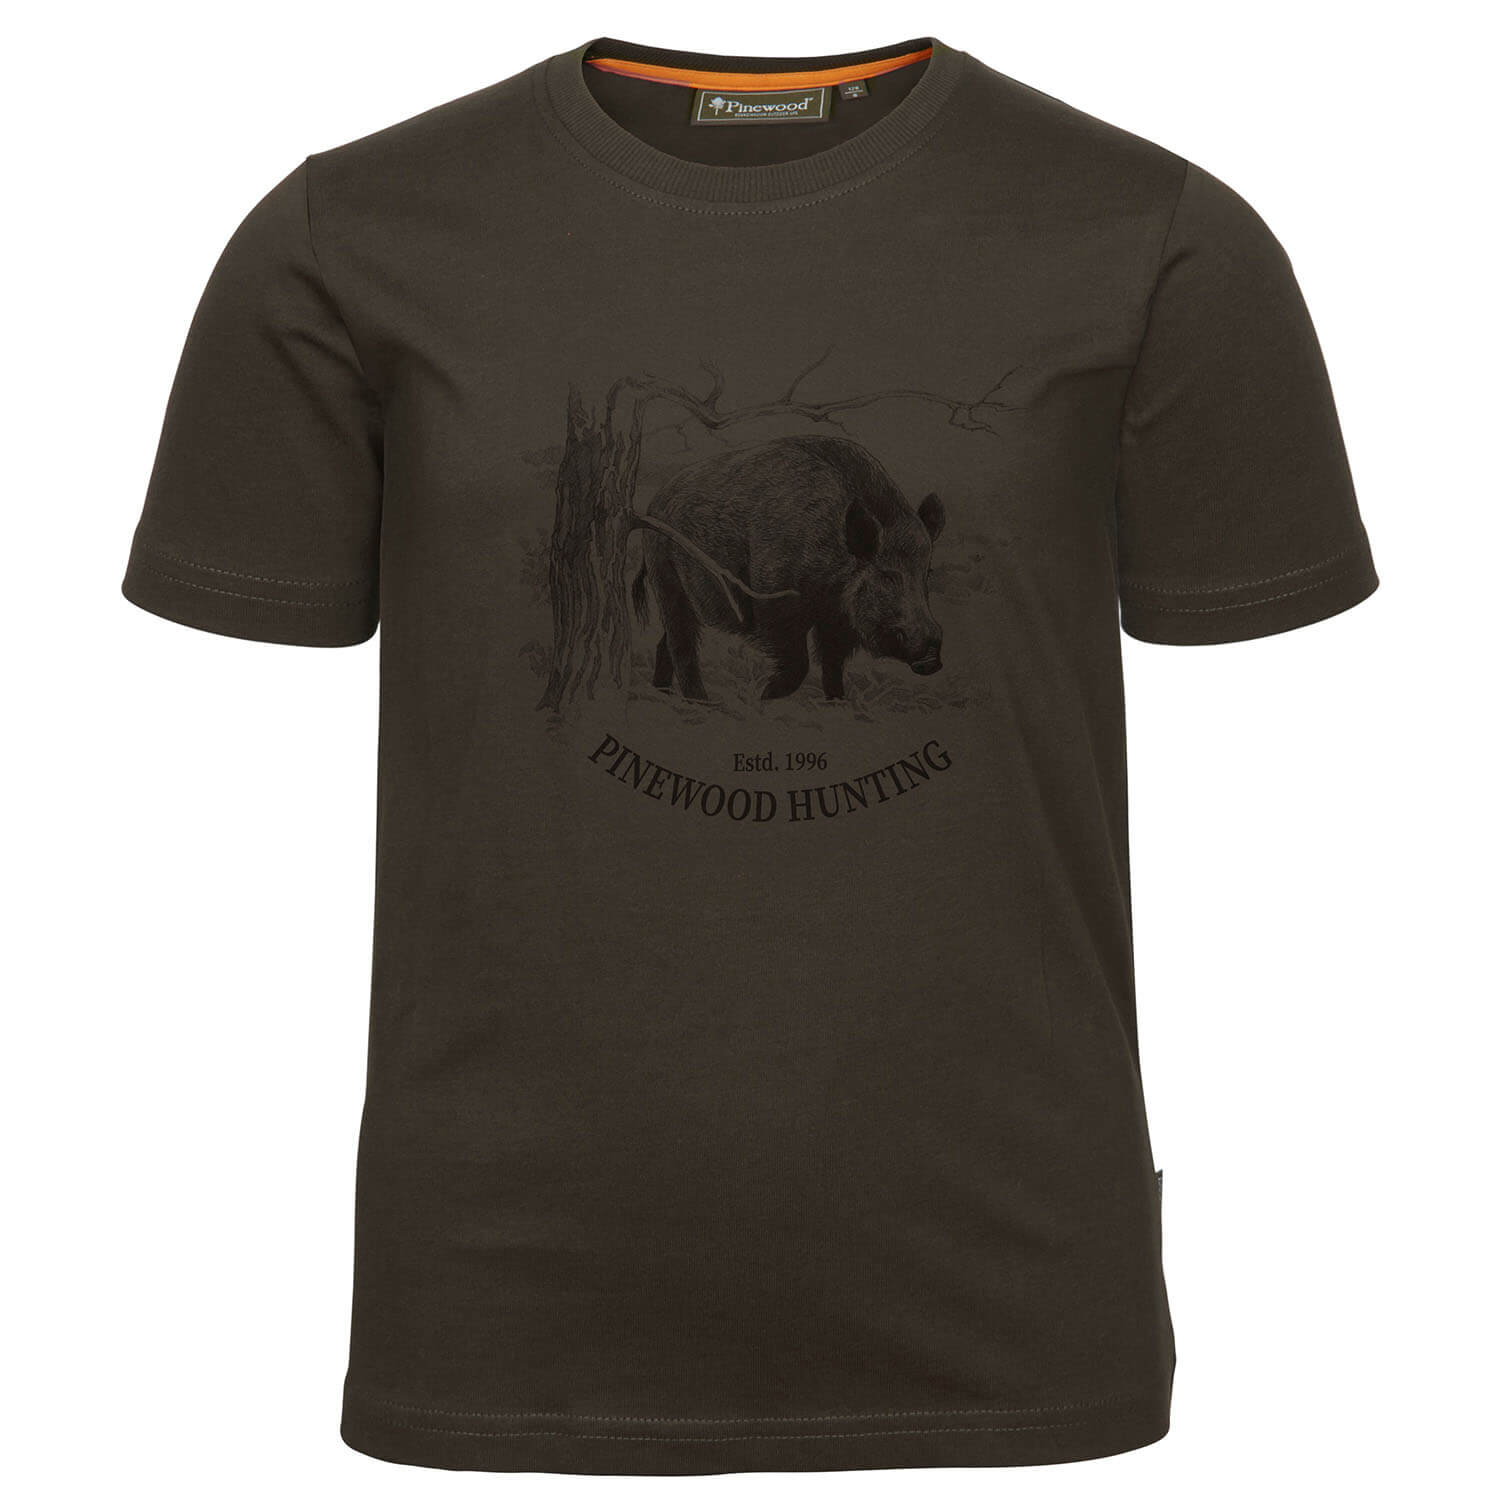 Pinewood T-Shirt Wild Boar Kids - Kinder